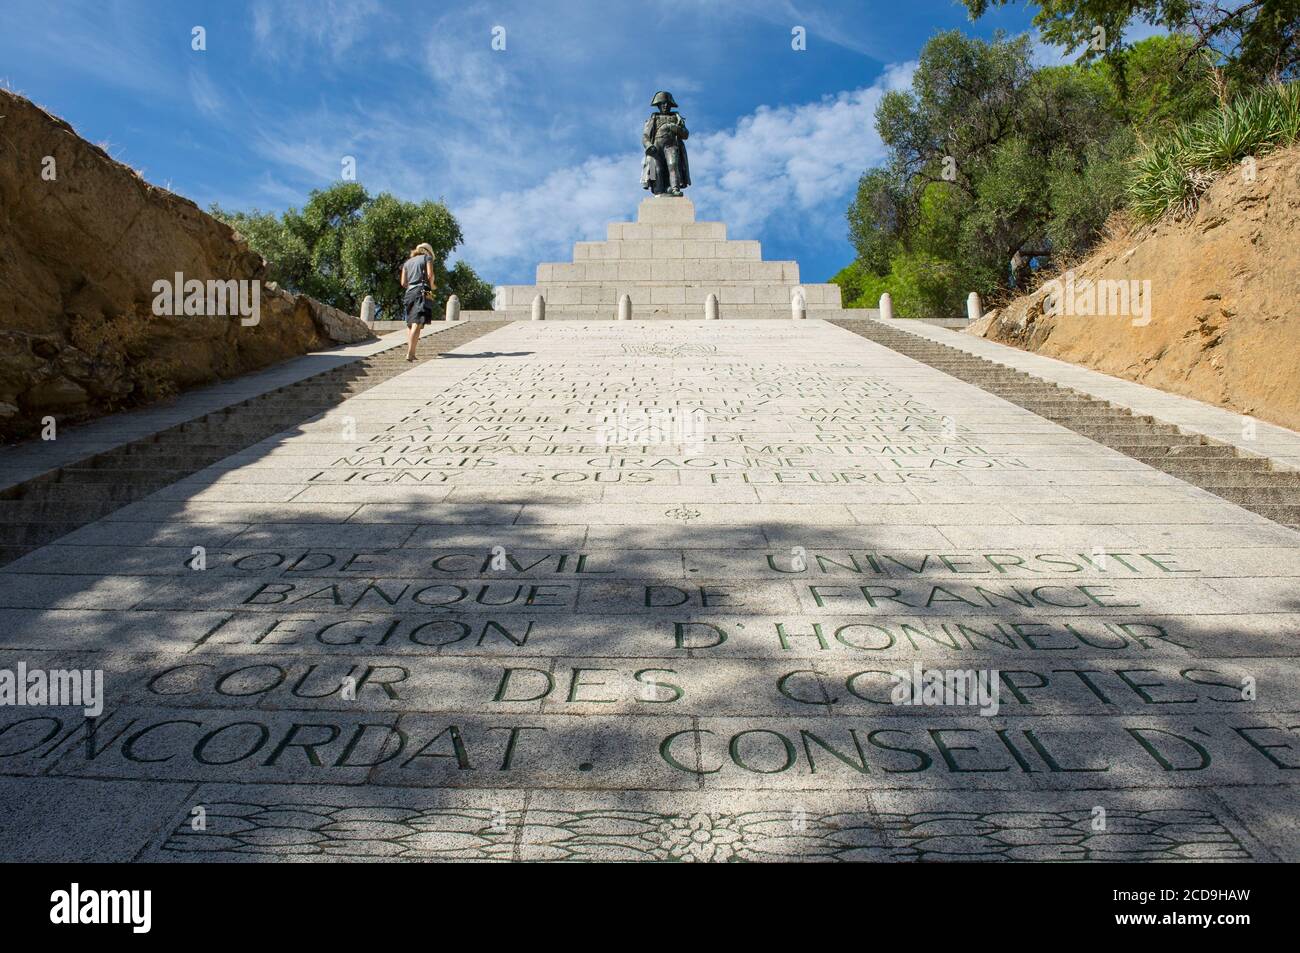 Frankreich, Corse du Sud, Ajaccio, Gedenkstätte Napoleon Bonaparte am oberen Ende der Straße von General Leclerc ist die Liste seiner Errungenschaften zwischen den Treppen eingraviert Stockfoto